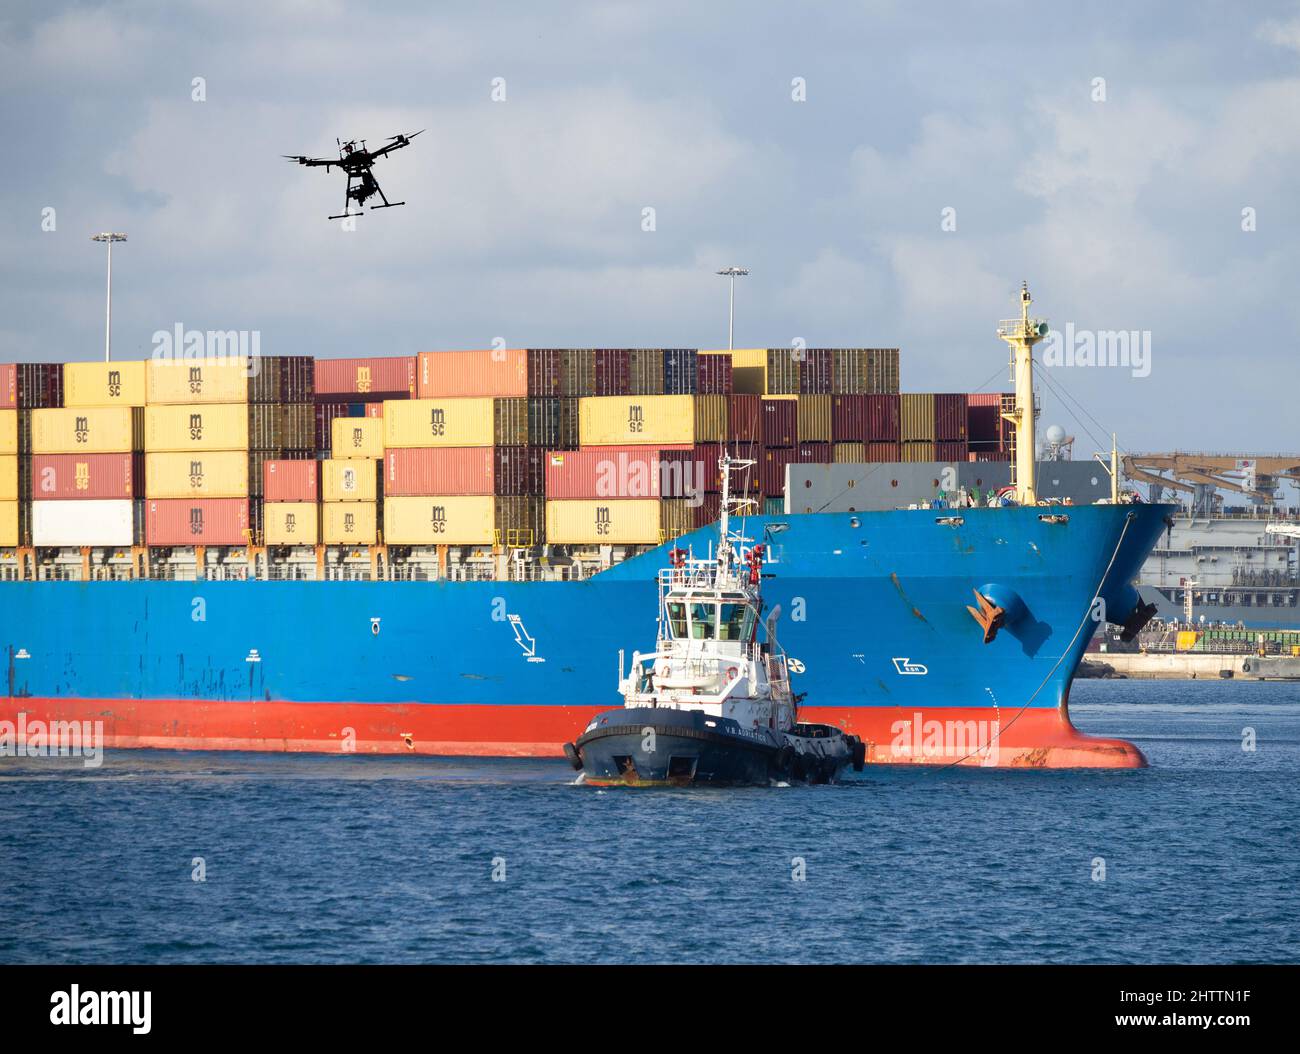 Drone che vola sopra la nave container e il rimorchiatore. Concetto: Tecnologia dei droni, Mar Rosso, attacco, dirottamento sorveglianza, sicurezza, attacco droni... Foto Stock